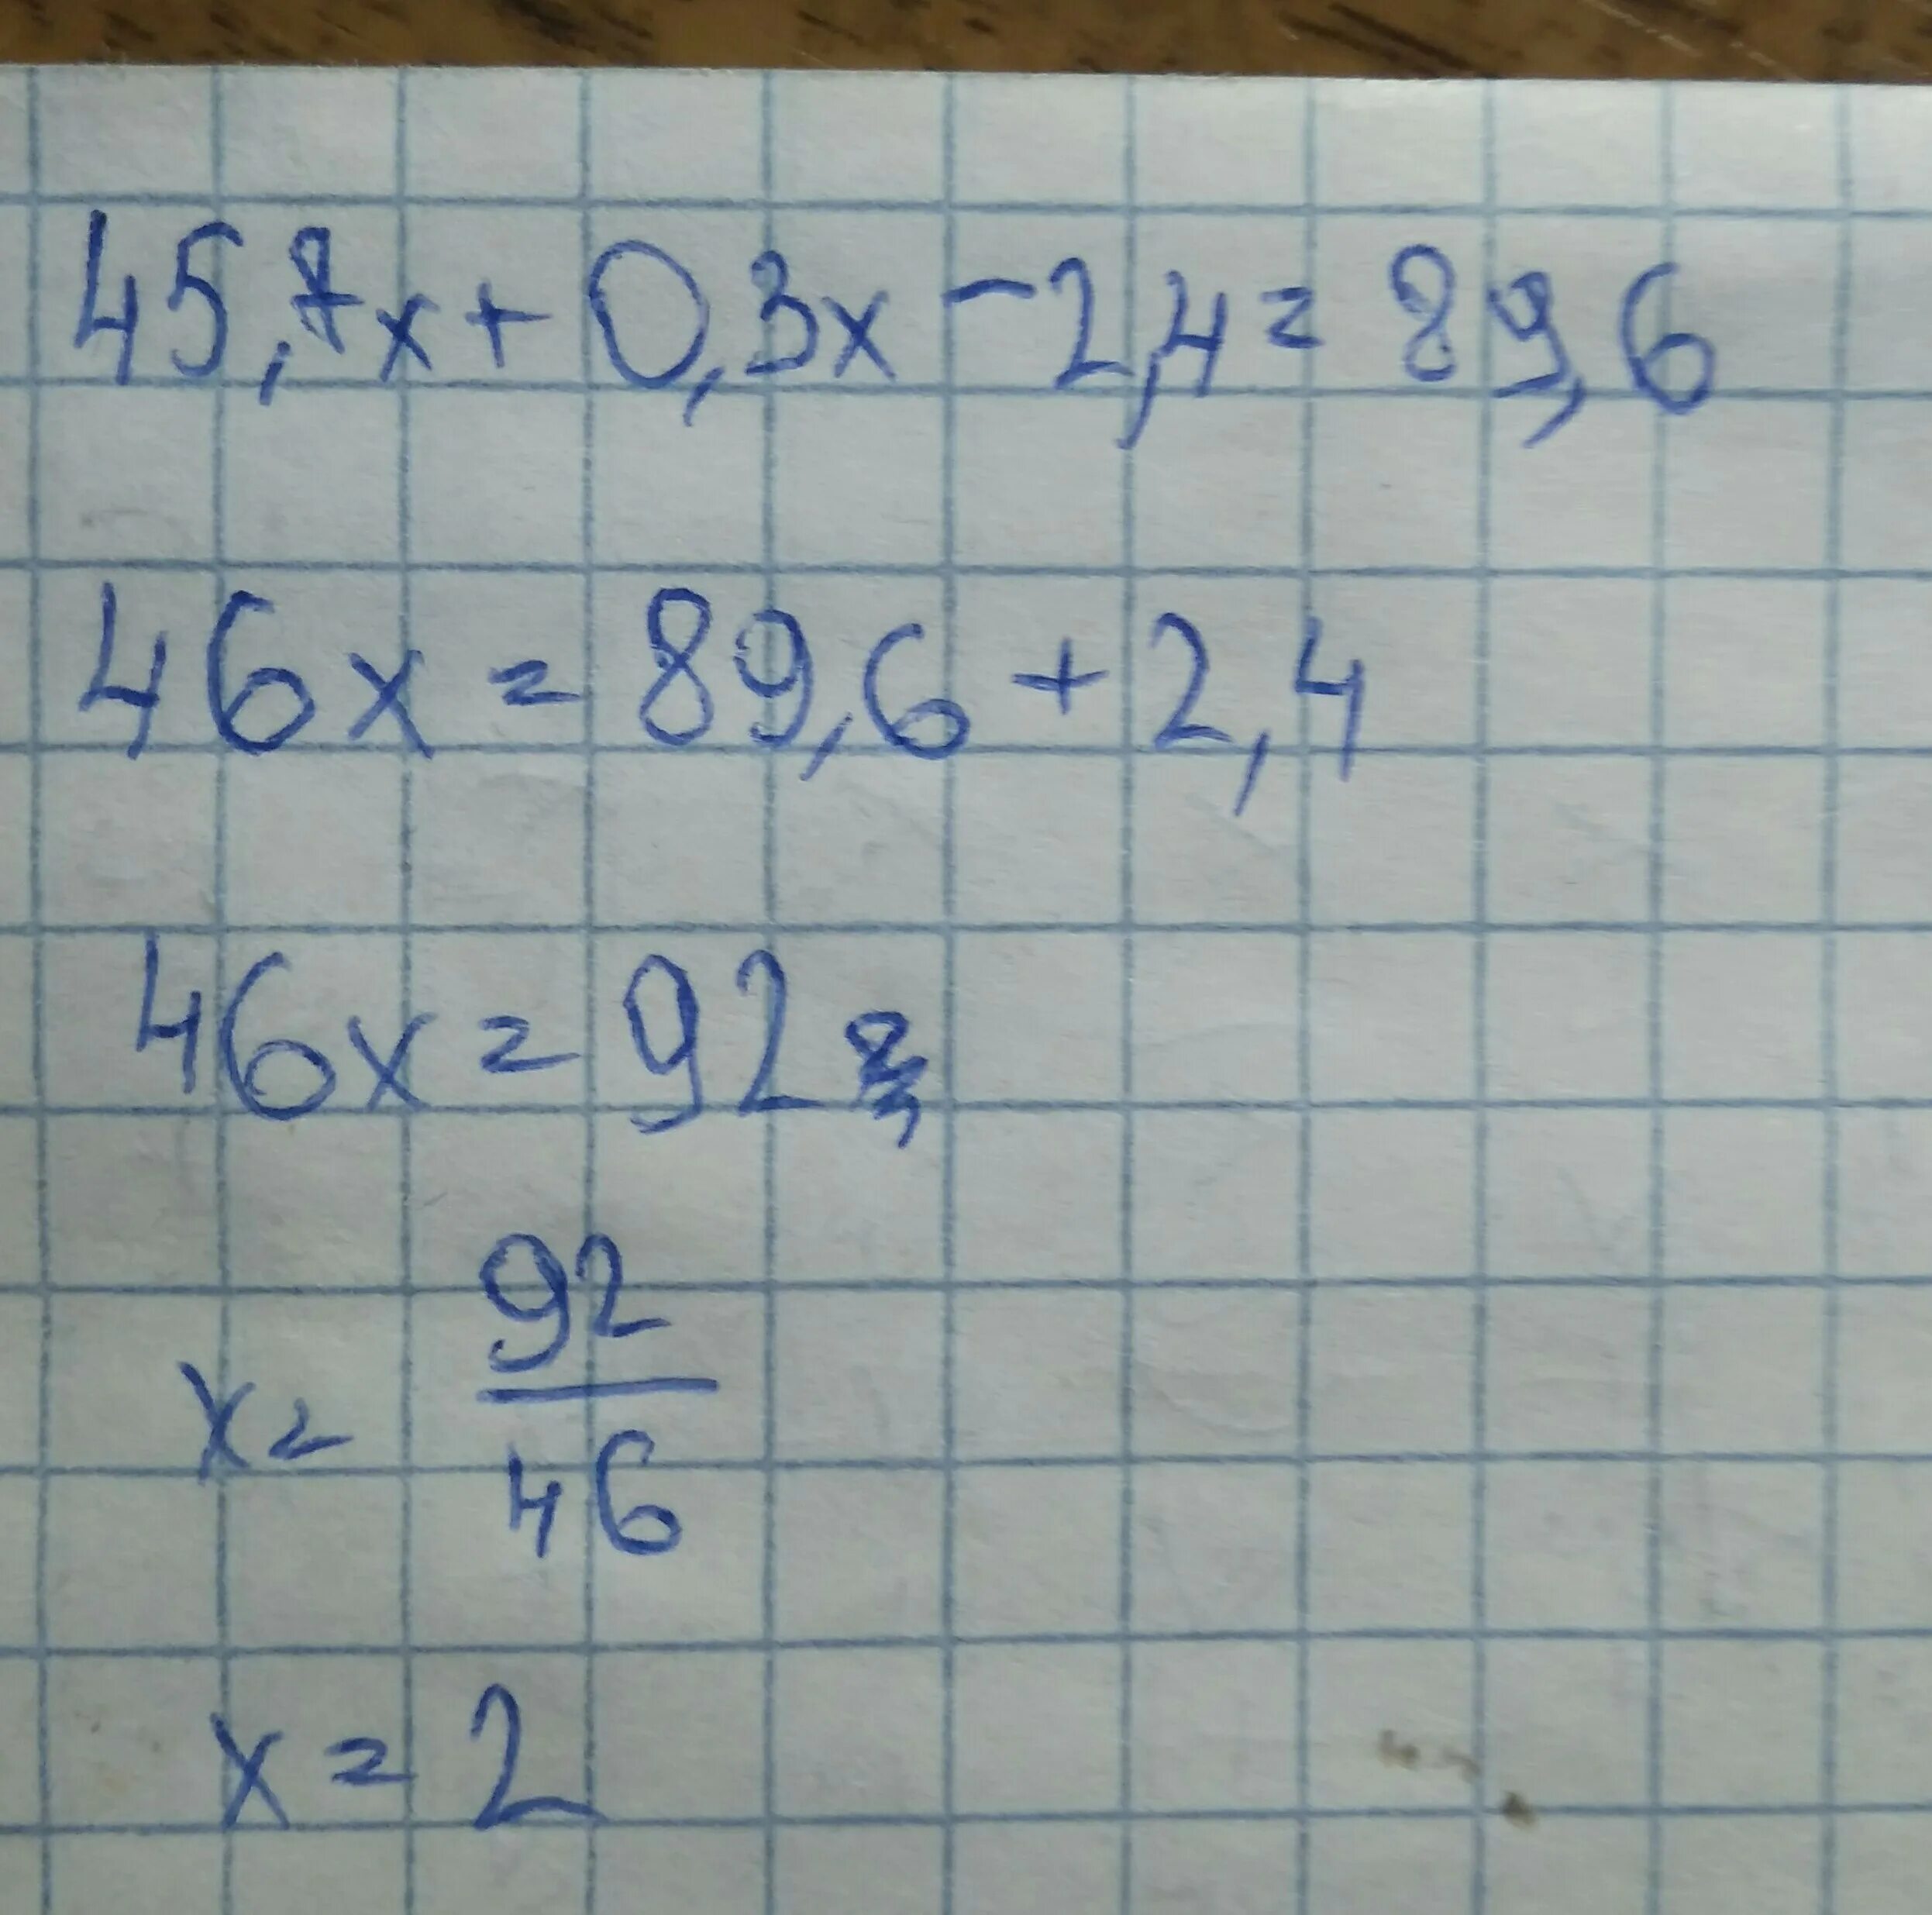 3 2x 7 27. 45.7Х+0.3Х-2.4 89.6 решение. Решите уравнение 45.7х+0.3х-2.4 89.6. 45 7х+0.3-2.4 89.6. 45 7х 0 3х-2 4 89 6.